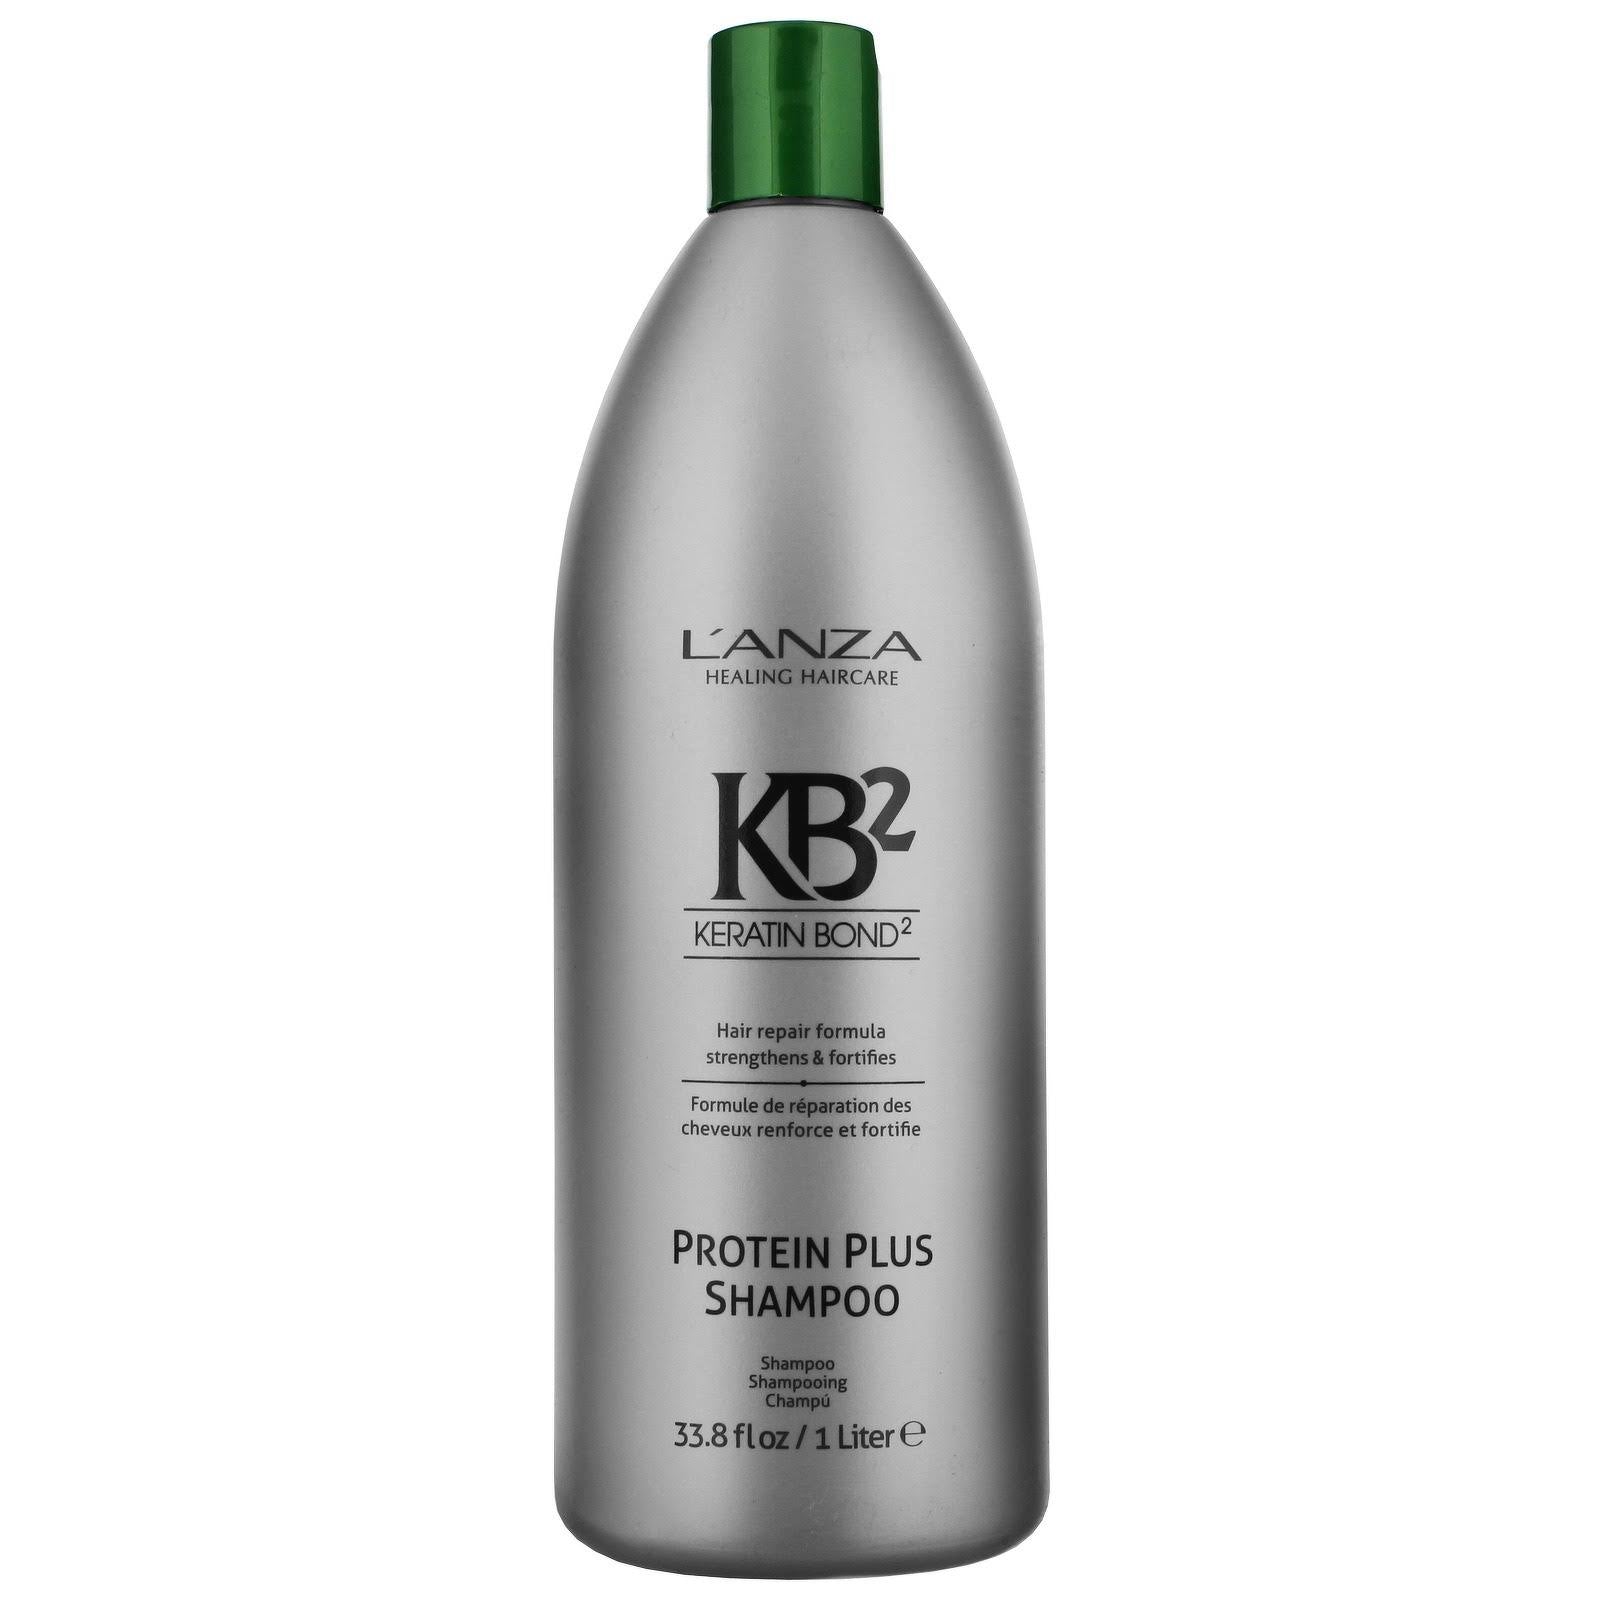 KB2 Plus Shampoo 338 oz –